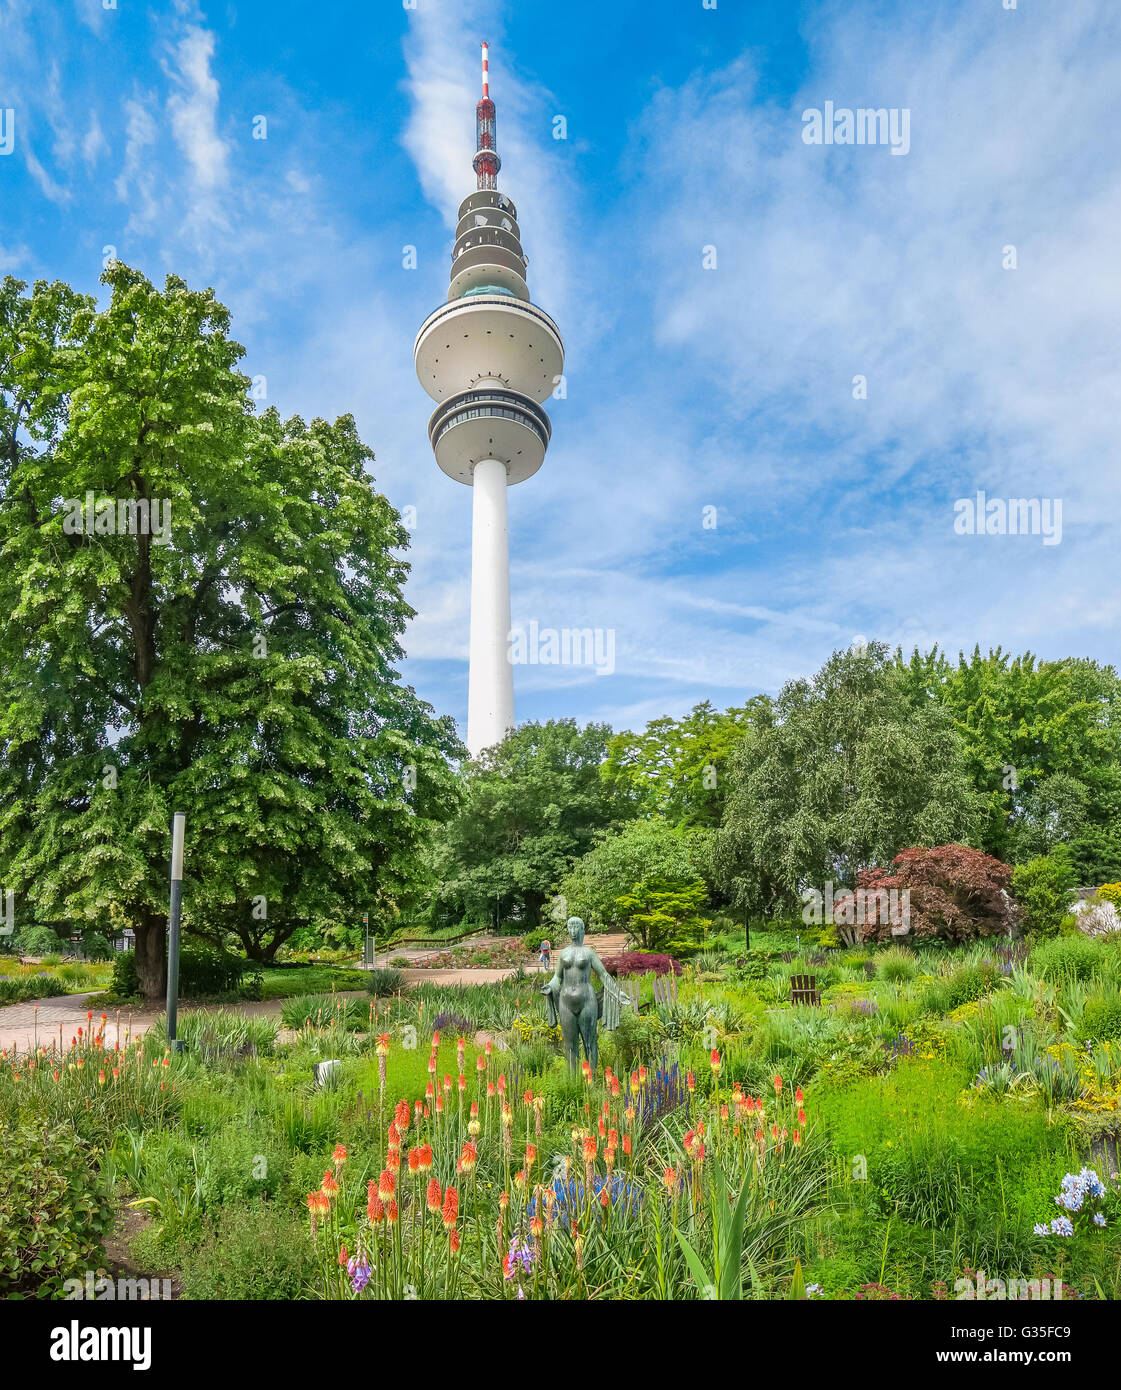 Schöne Aussicht auf Blumengarten in Brotfruchtbäumen Umm Blomen park mit berühmten Heinrich-Hertz-Turm Radio Fernmeldeturm im b Stockfoto